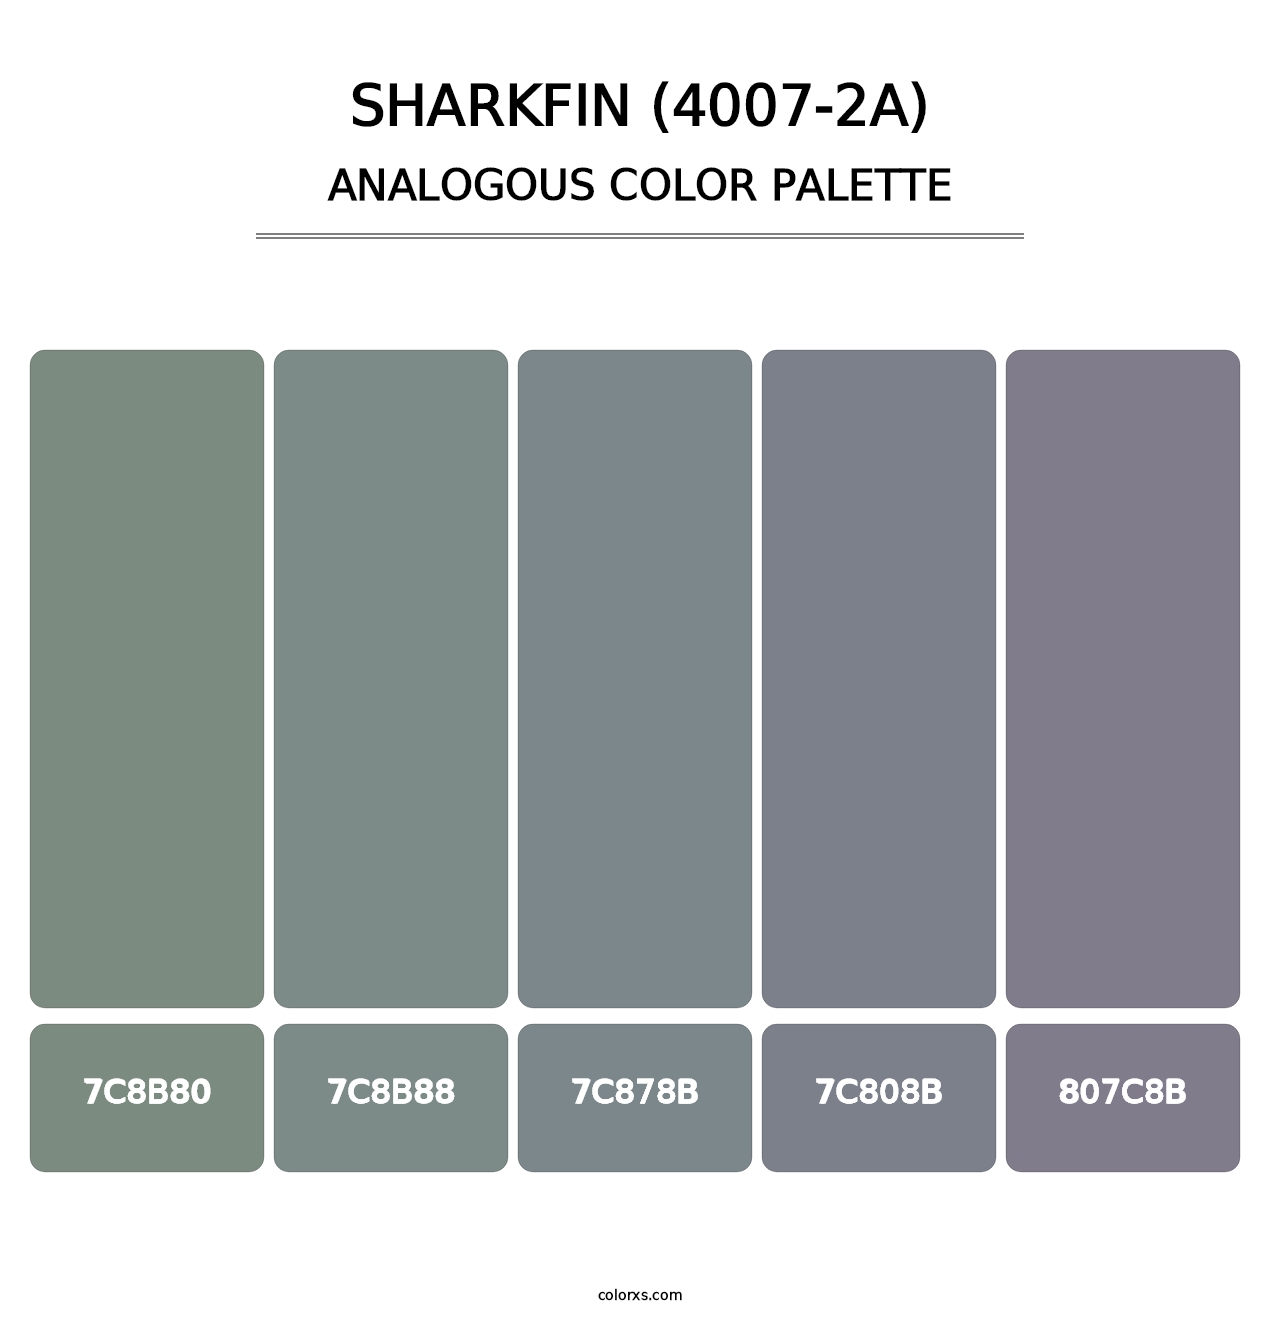 Sharkfin (4007-2A) - Analogous Color Palette